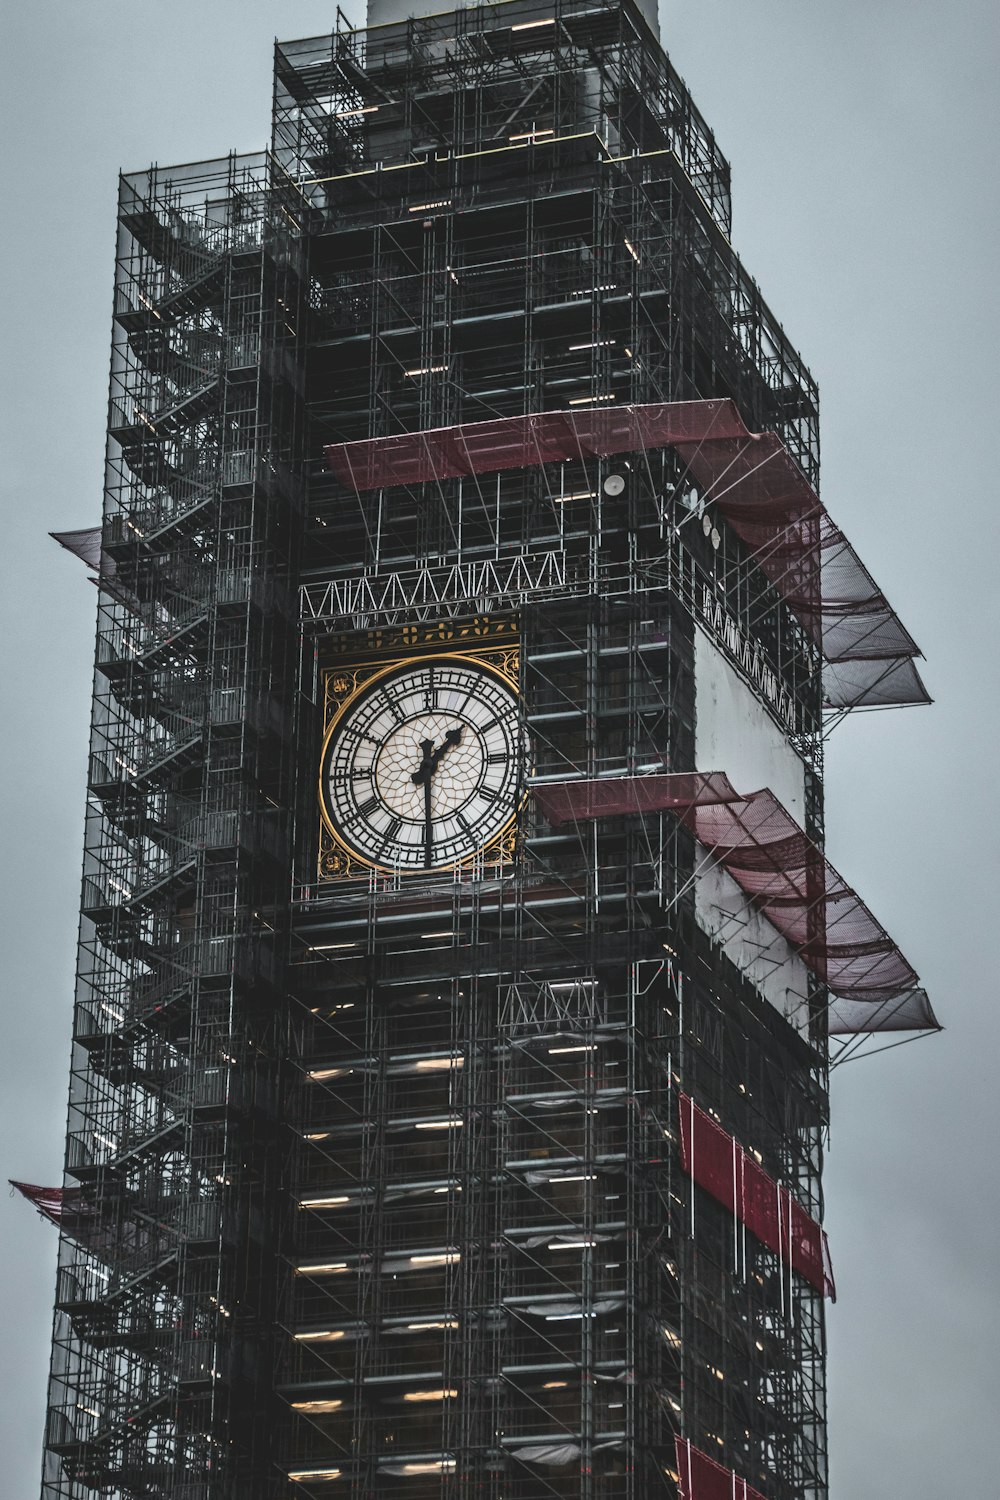 estrutura do relógio da torre